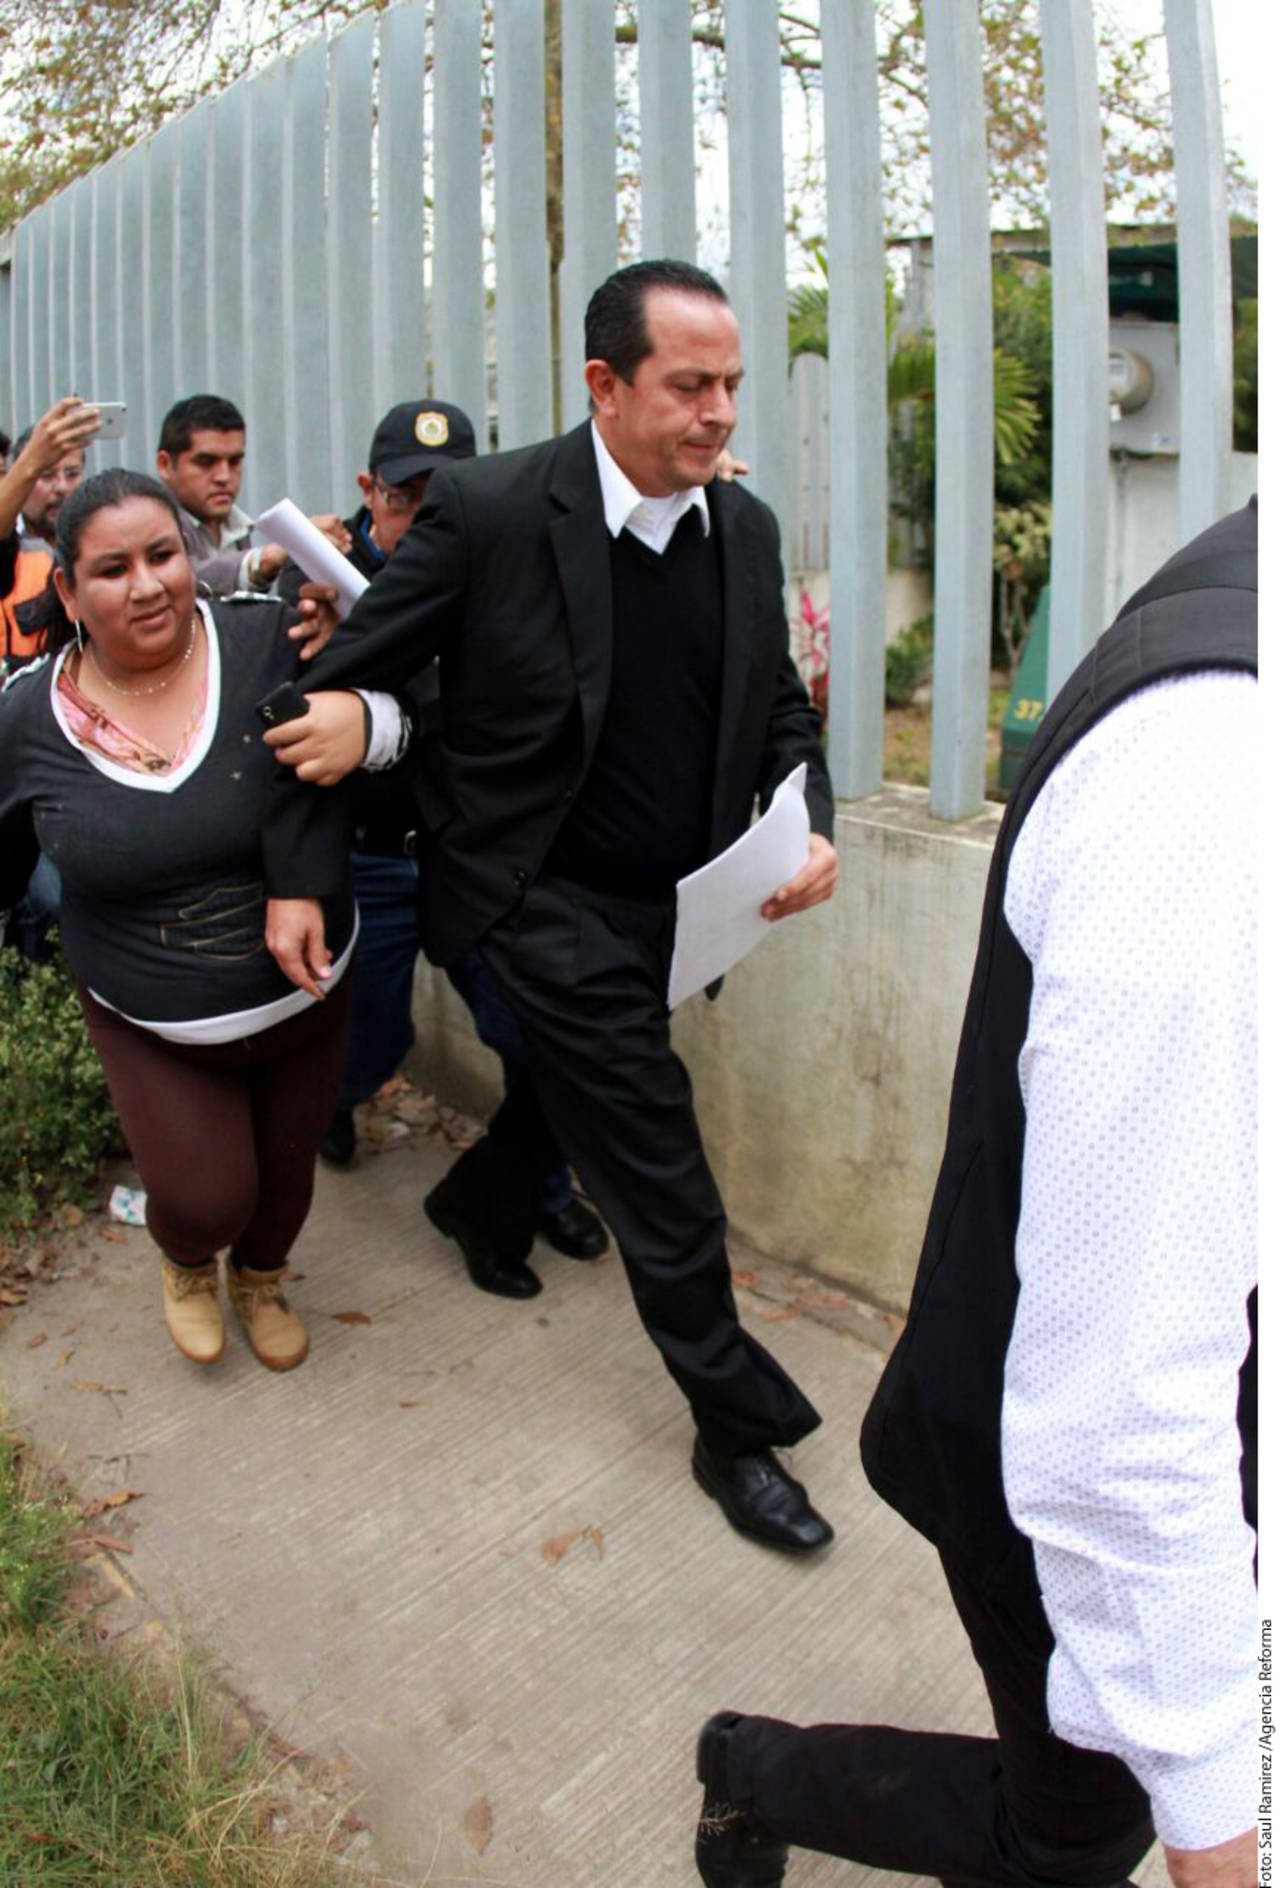 Detenido. Arturo Bermúdez Zurita es uno de los hombres más cercanos a Javier Duarte.